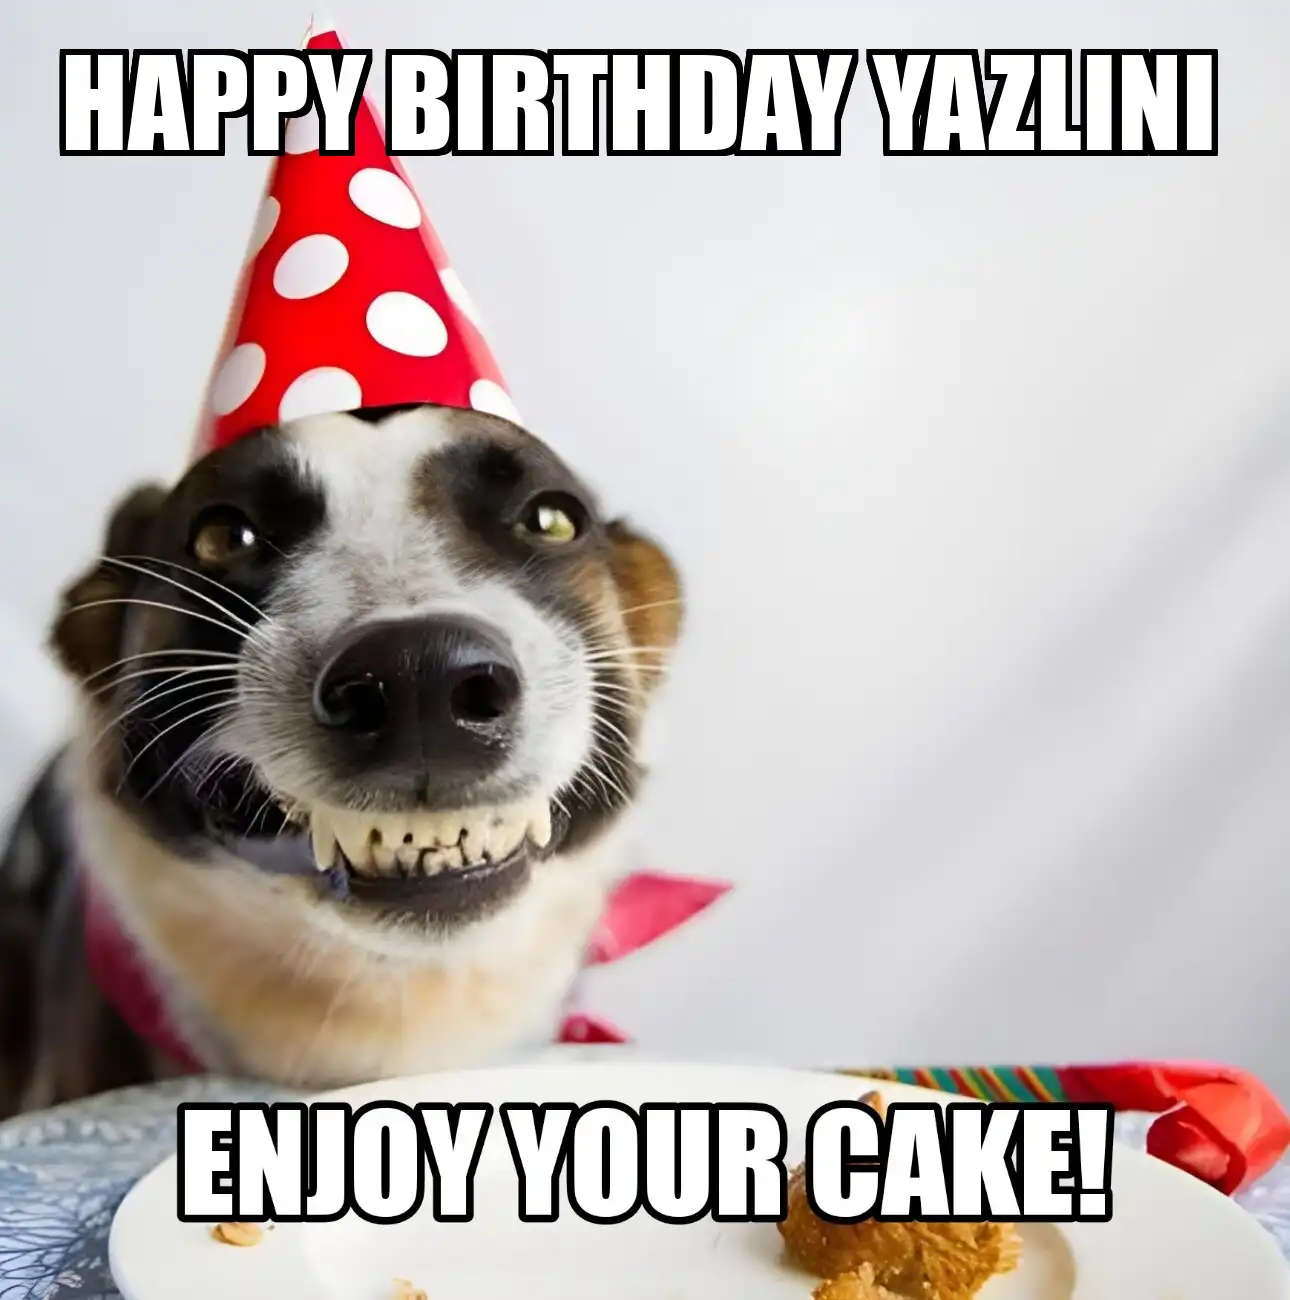 Happy Birthday Yazlini Enjoy Your Cake Dog Meme